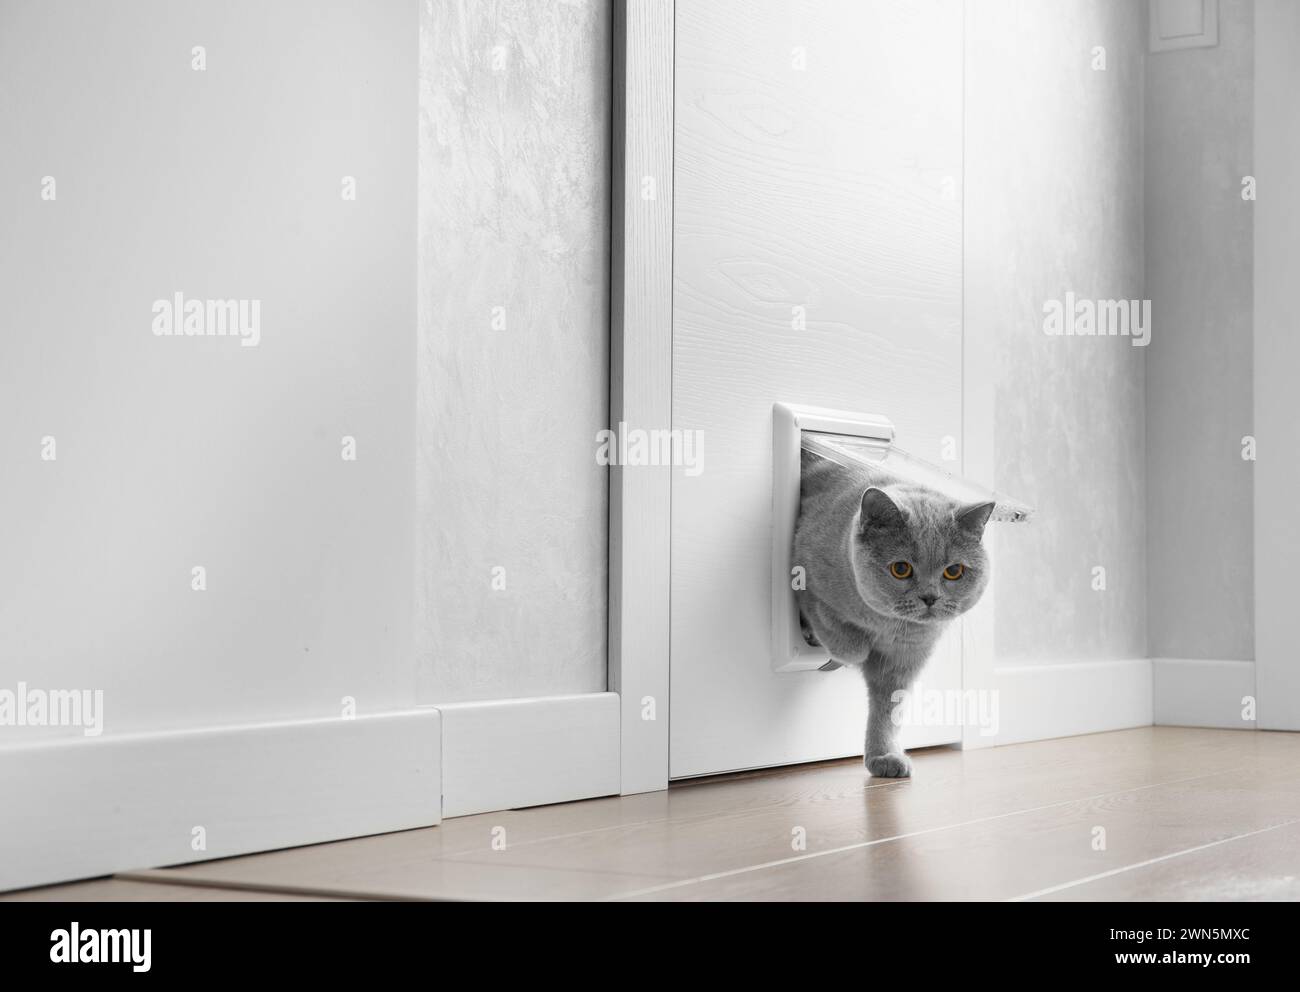 Eine britische graue Katze geht durch eine Katzenklappe, eine Katzenluke in einer Tür und schaut in die Kamera, eine Haustiertür in einem Wohnraum. Stockfoto